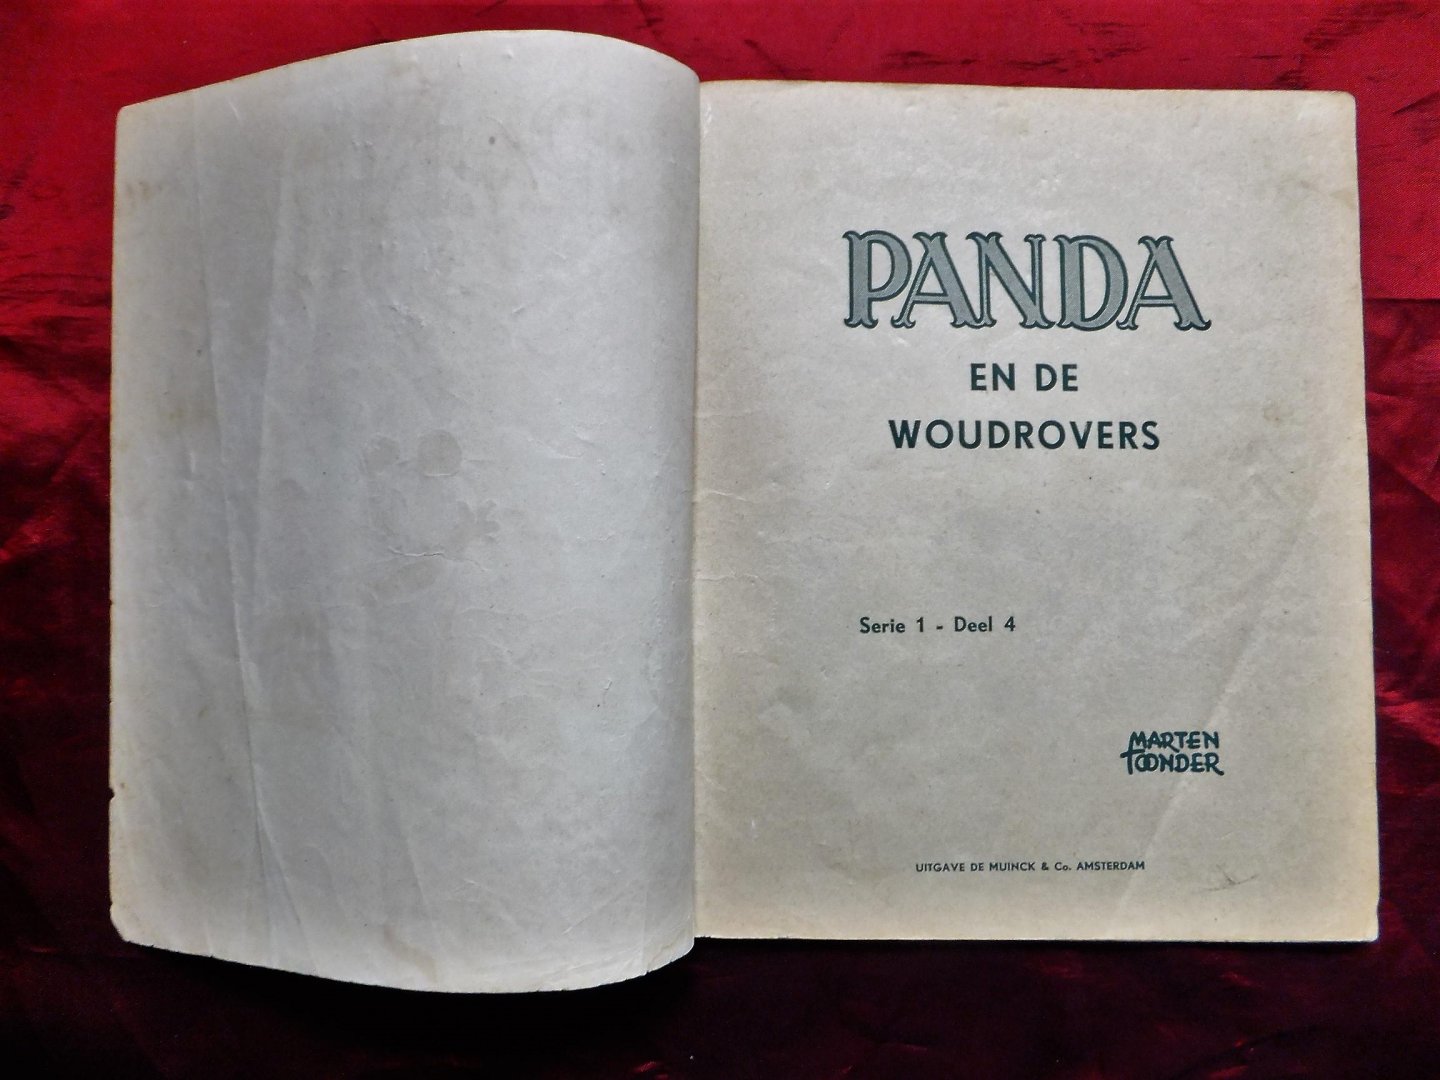 Toonder, Marten - 3. Panda en de meester-oudheidkundige 4. Panda en de woudrovers